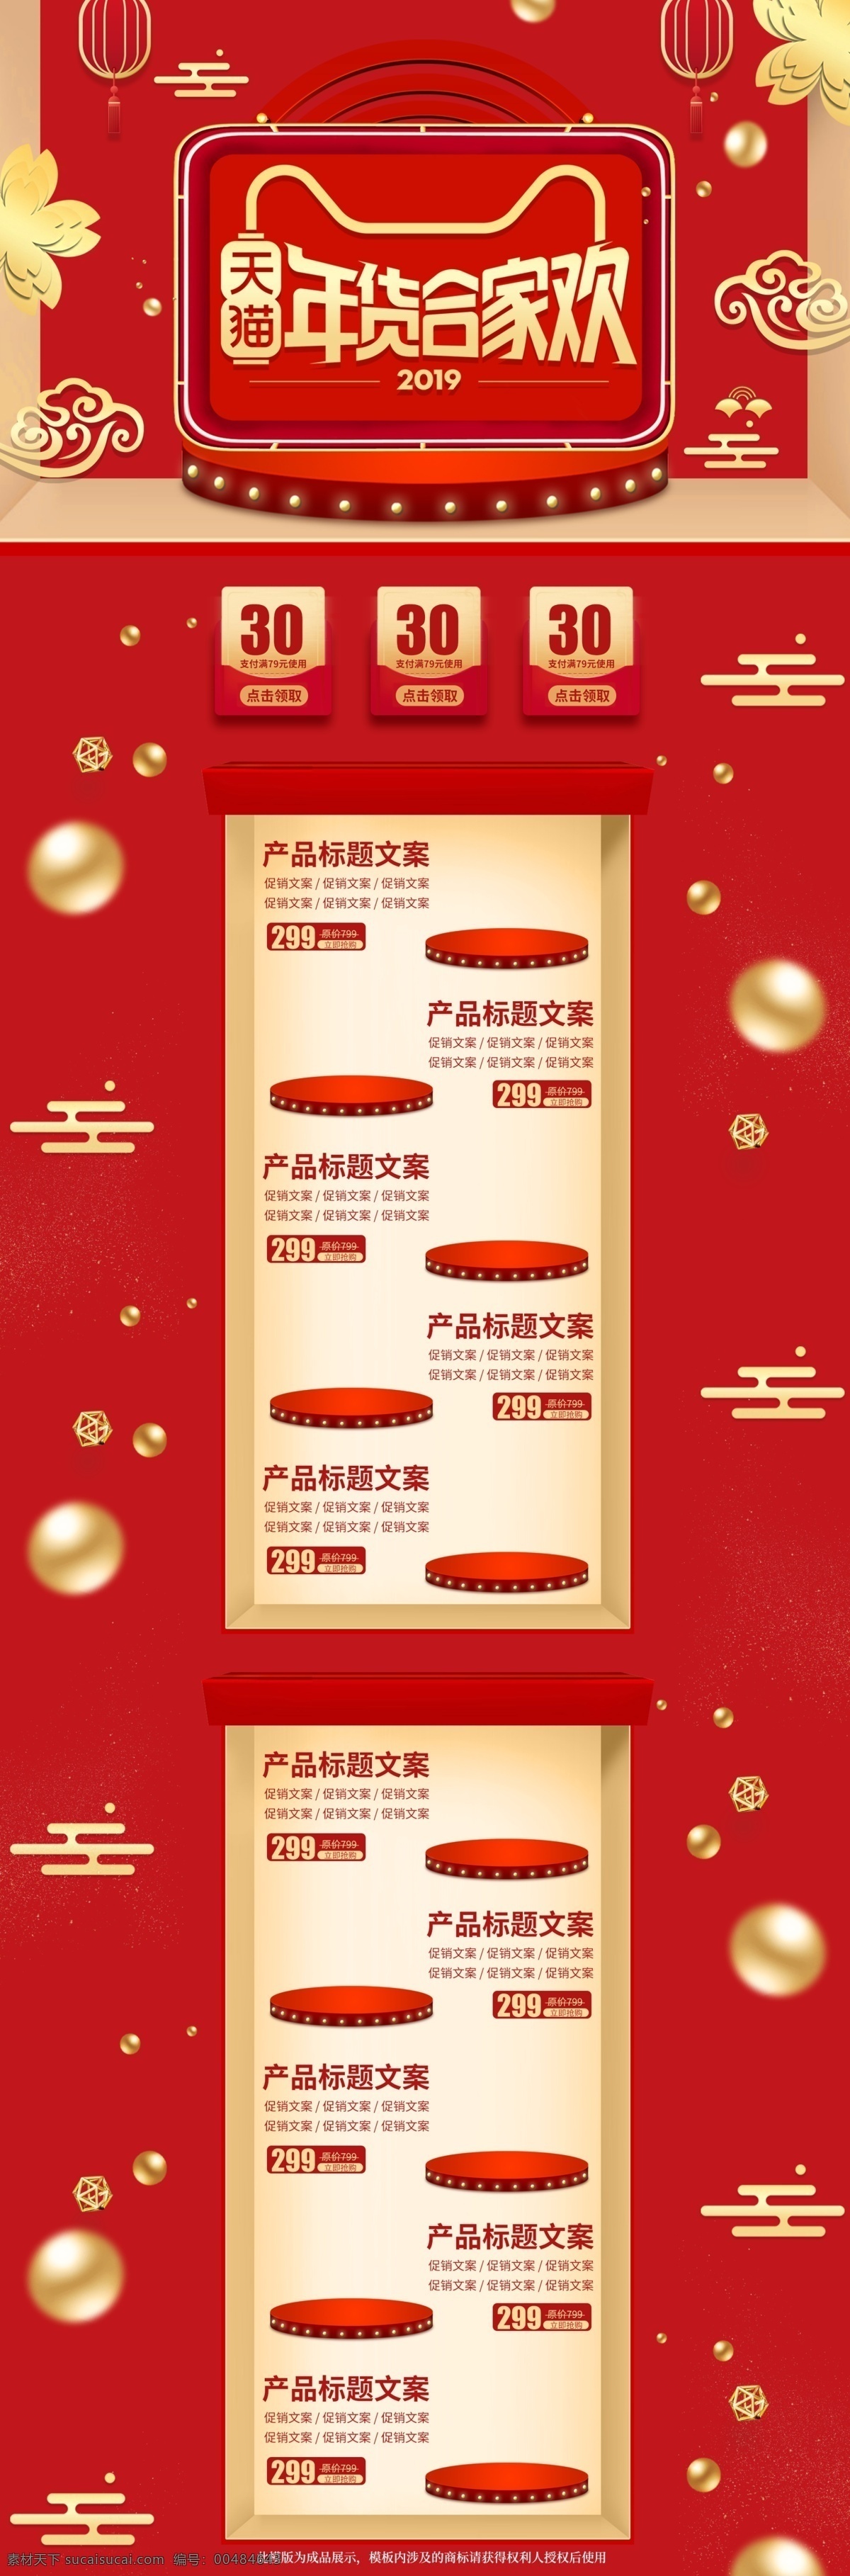 中国 风 红 金 立体 年货 节 合家欢 首页 电商 模板 中国风 天猫 红金 年货节 淘宝